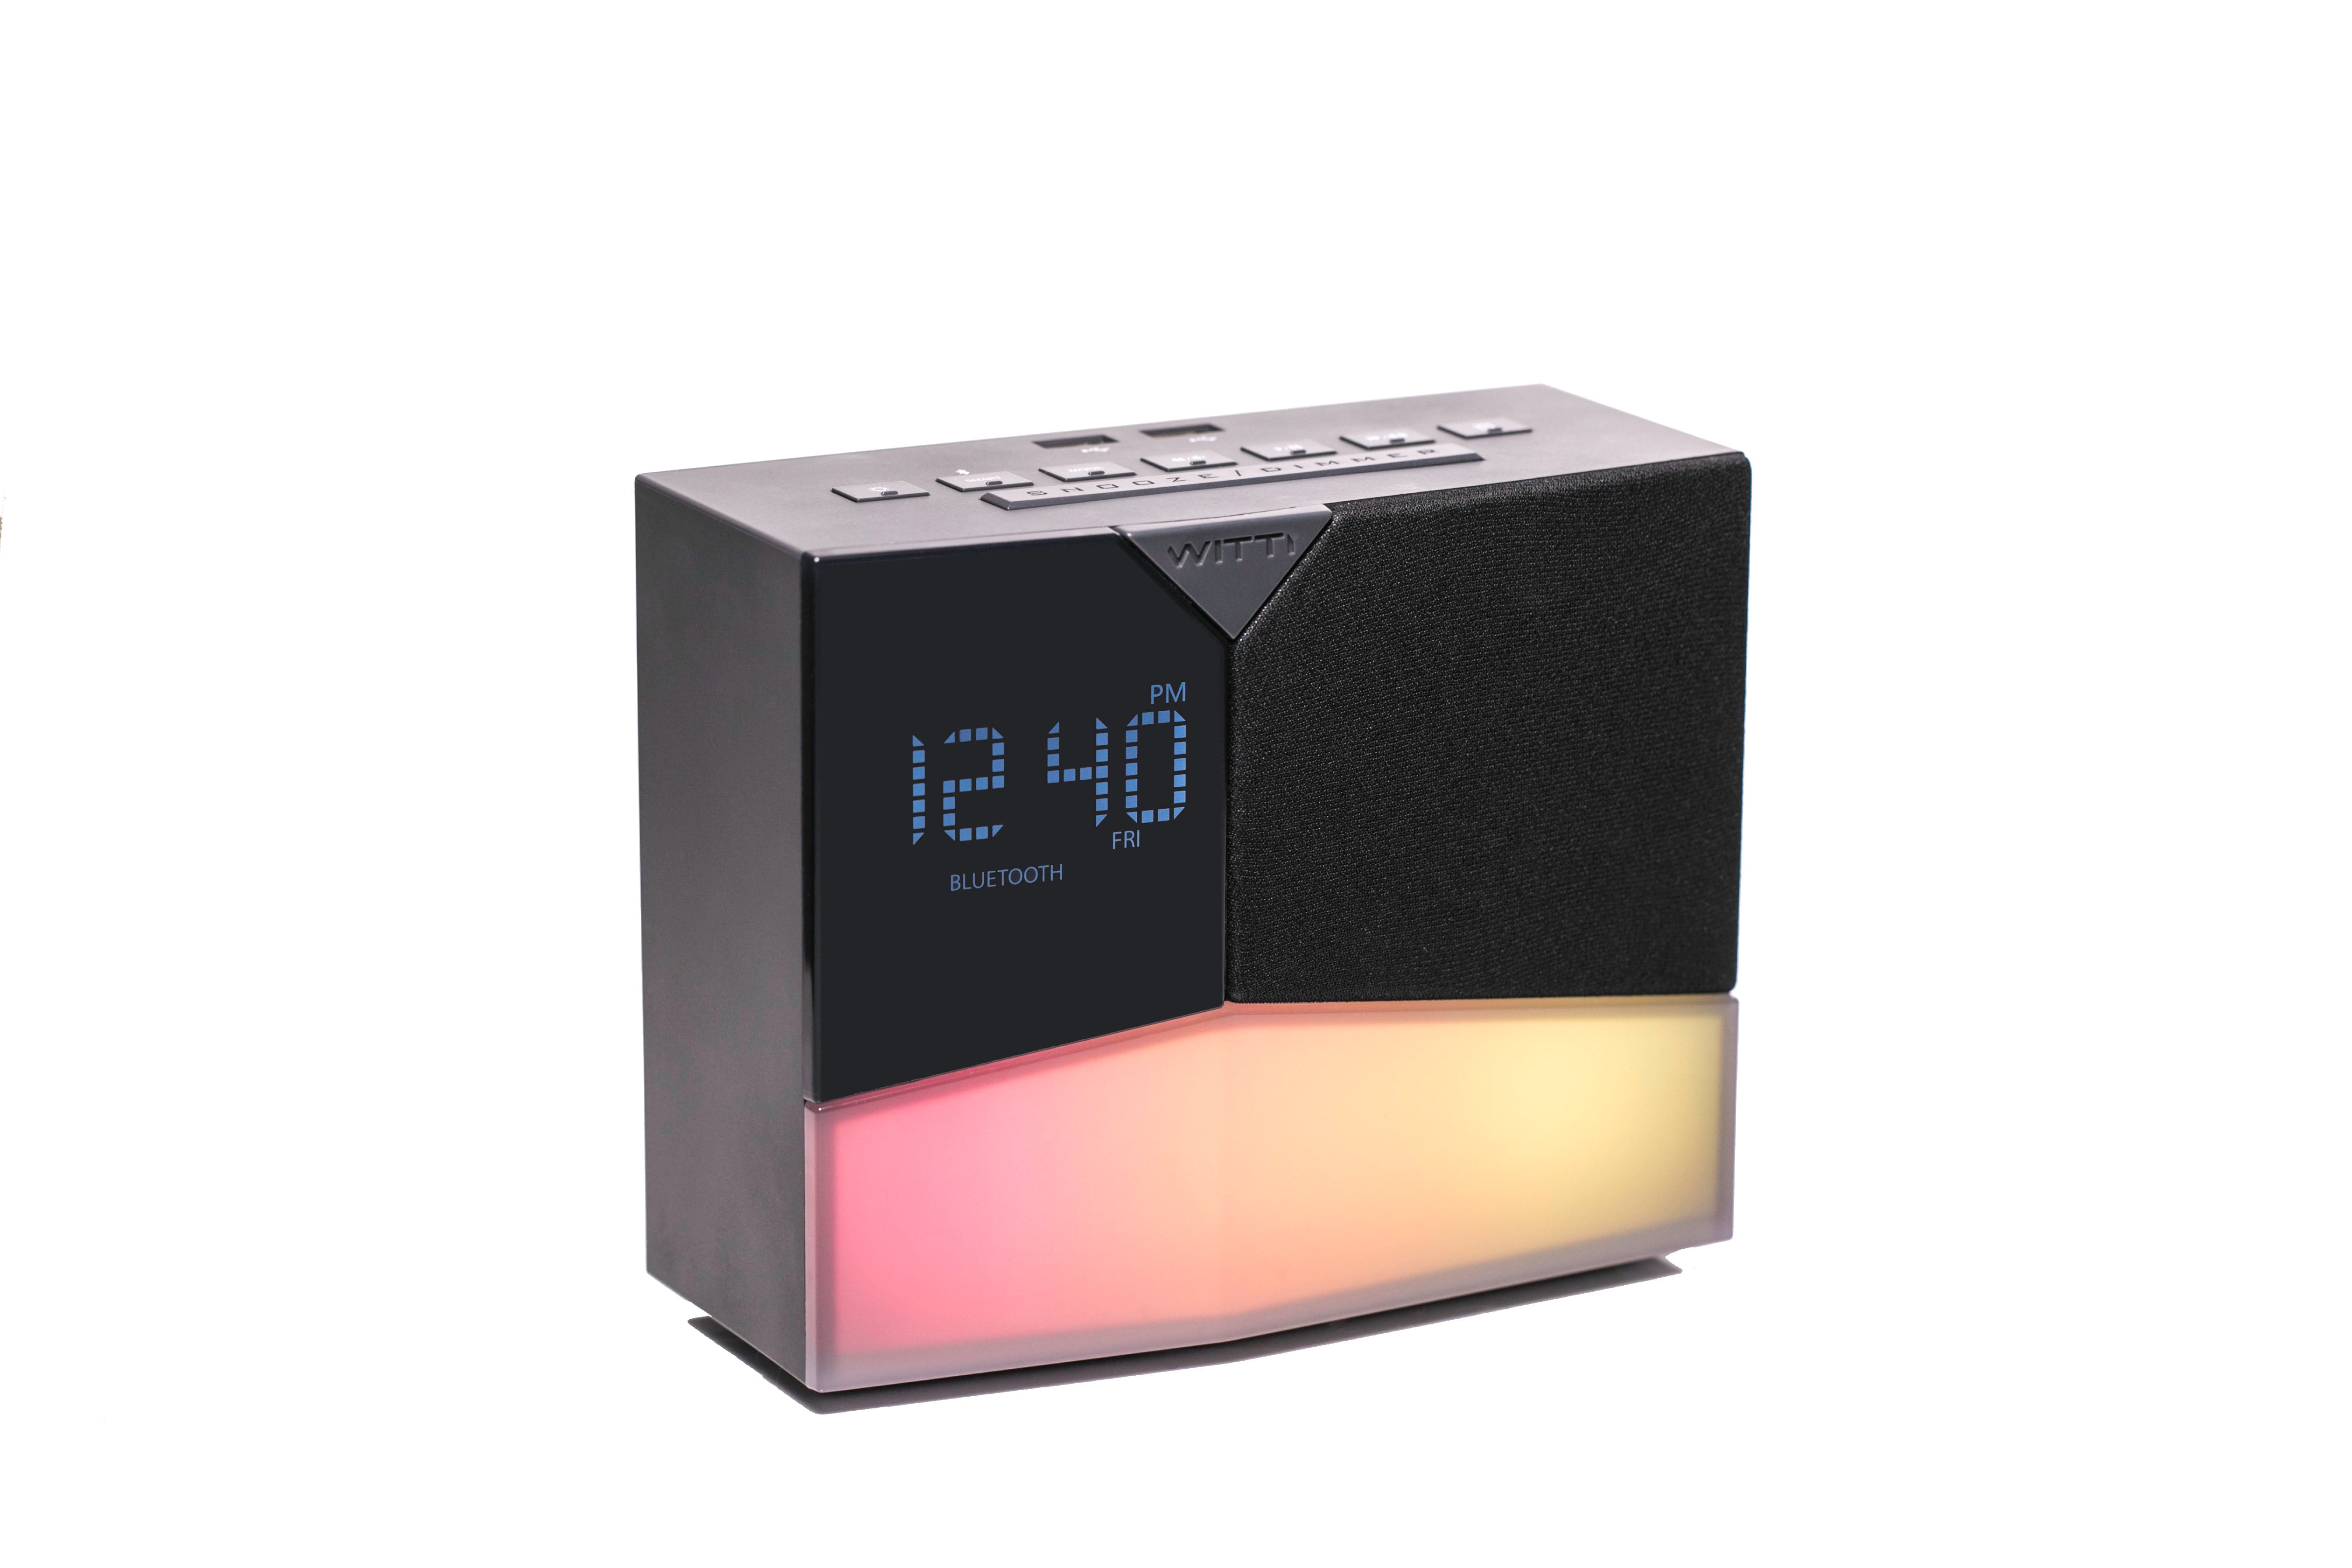 BEDDI Glow - Intelligent Alarm Clock 